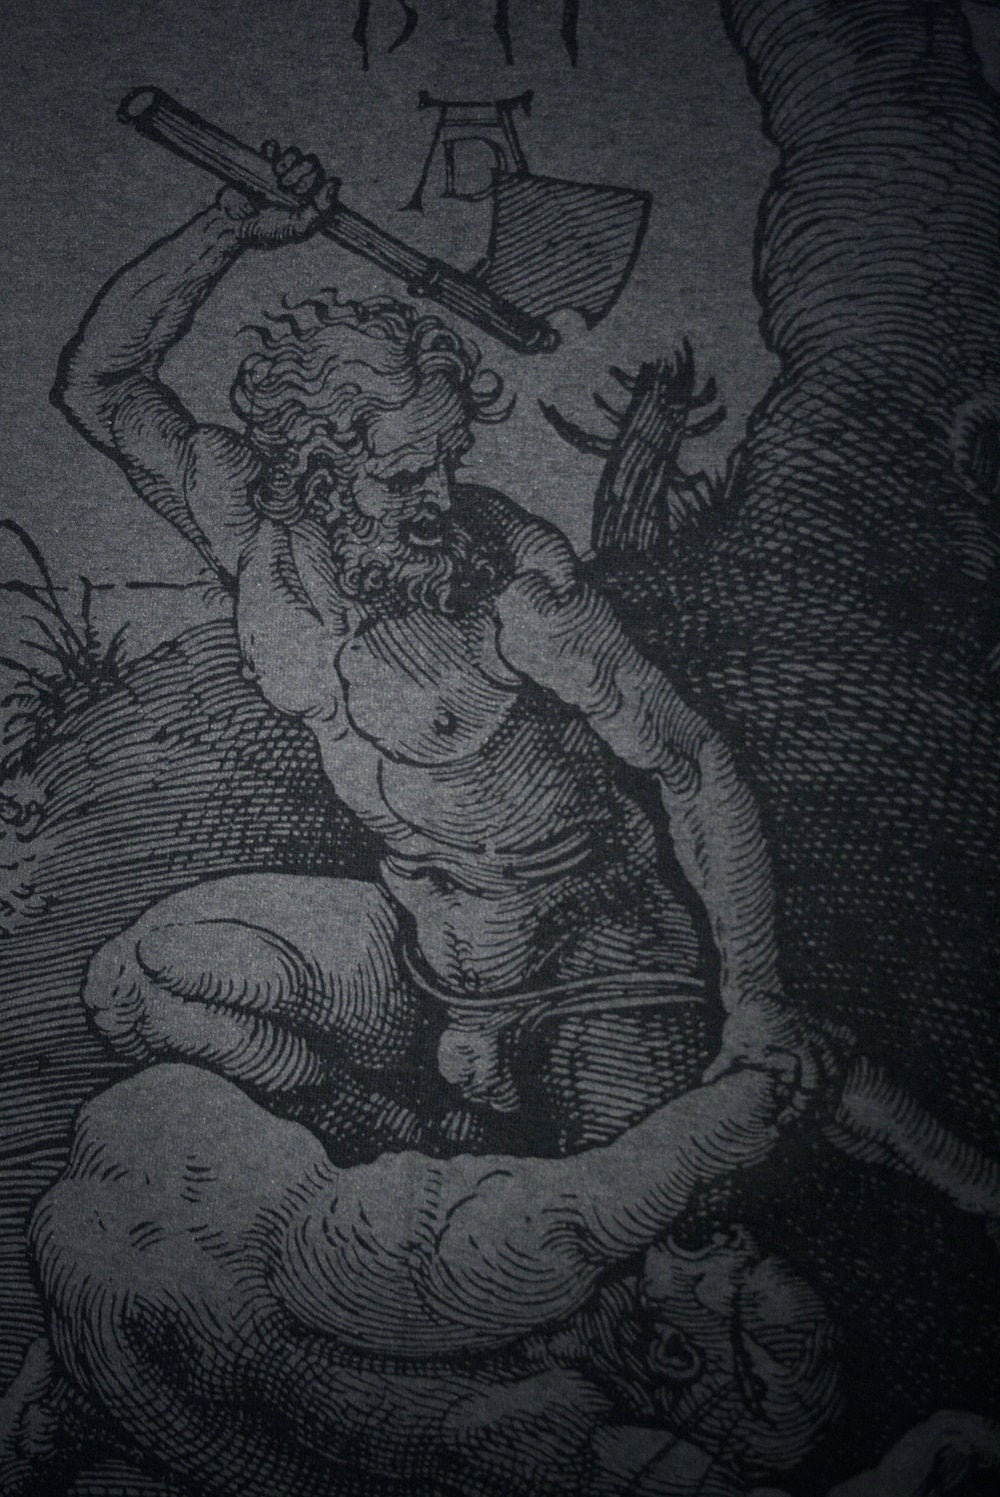 Cain and Abel, woodcut illustration by Albrecht Dürer - T-shirt